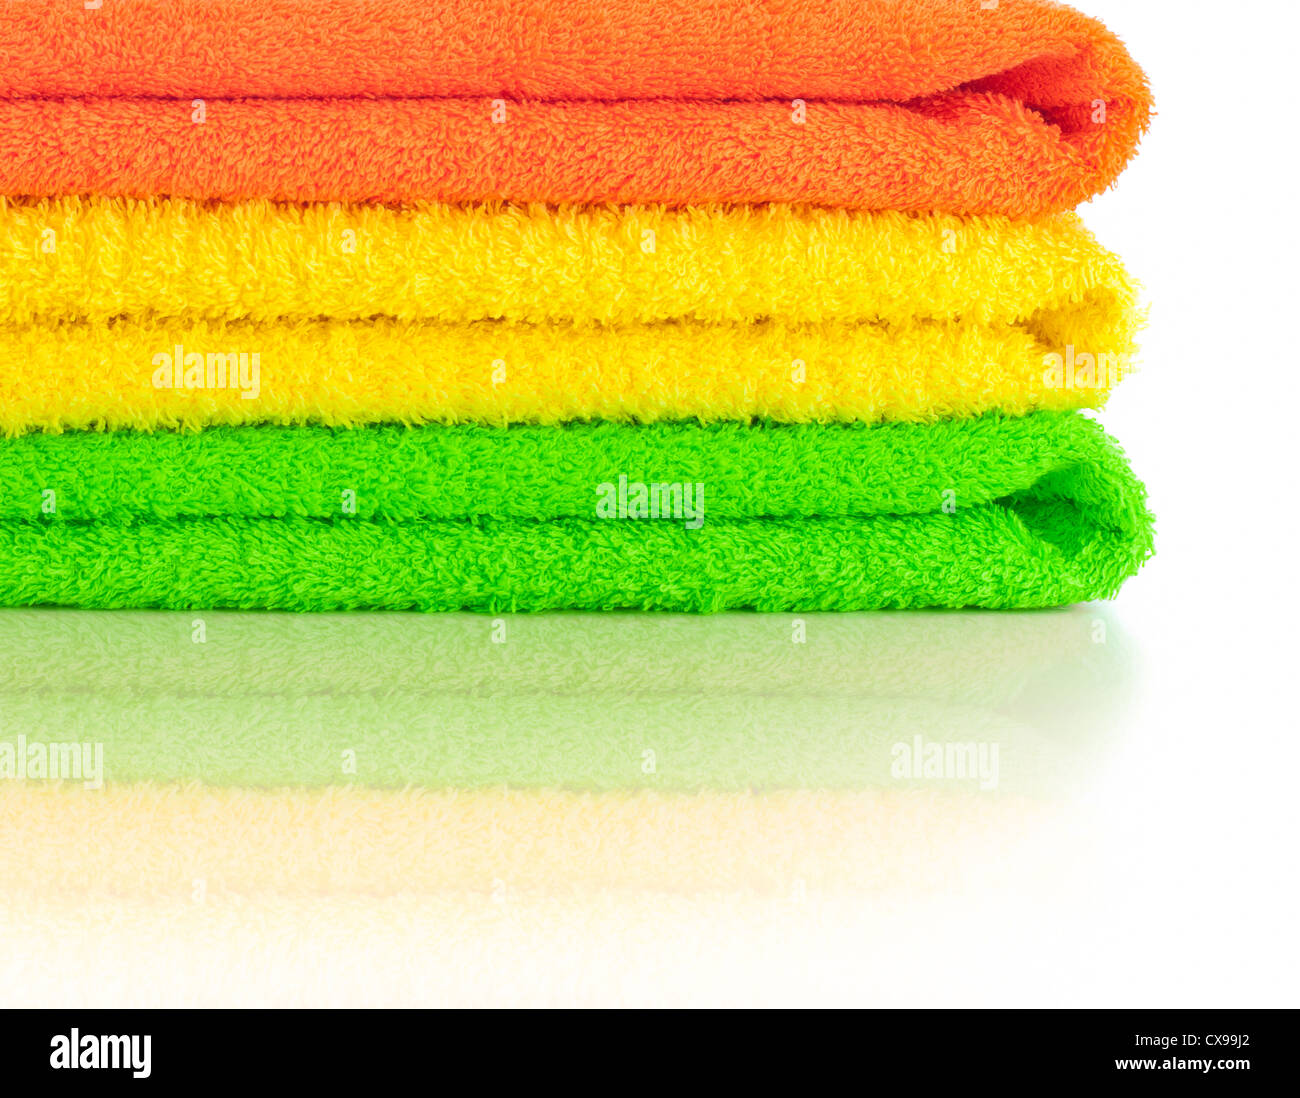 Pile de serviettes colorées frais isolé Banque D'Images